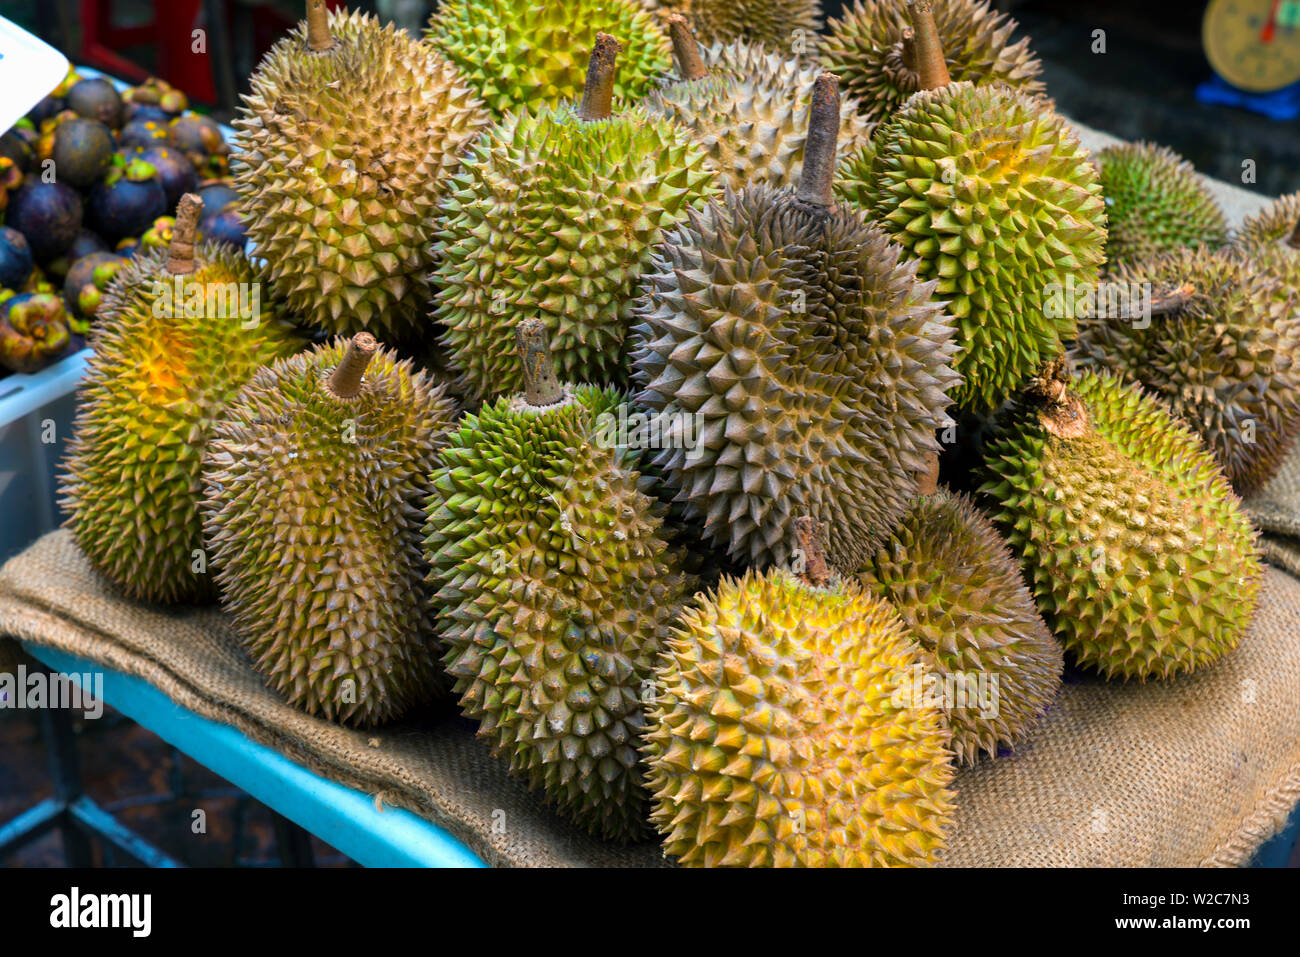 La Malaisie, Kuala Lumpur, China Town, juste à côté de Petaling street, la rue du marché, Durian fruit à vendre Banque D'Images